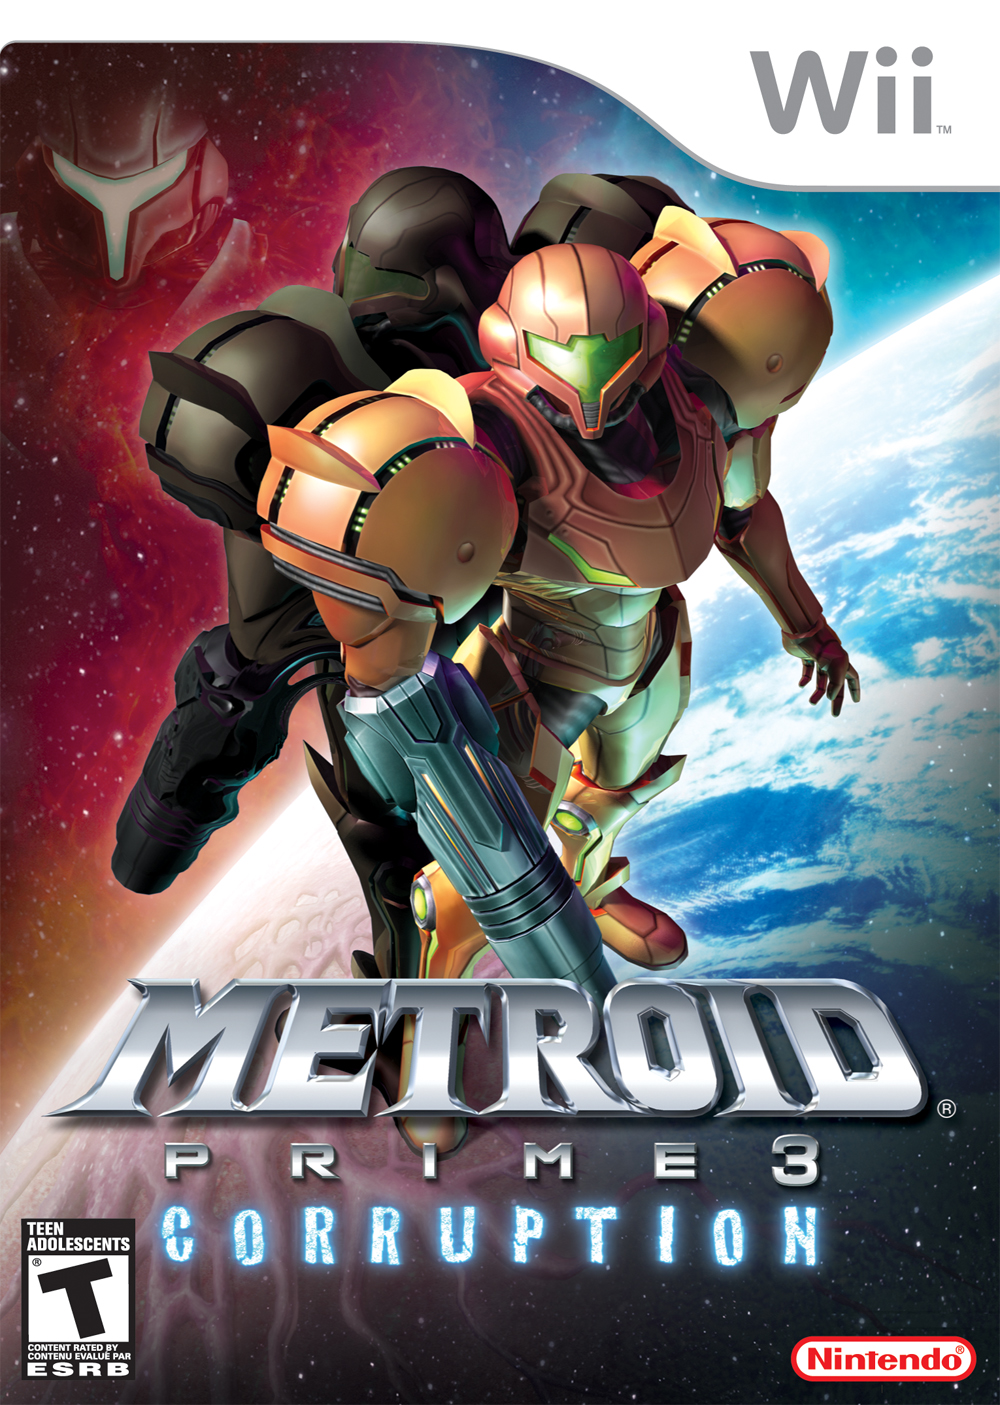 Rumor: John Woo Announcing ‘Metroid’ Film at Comic-Con NYC